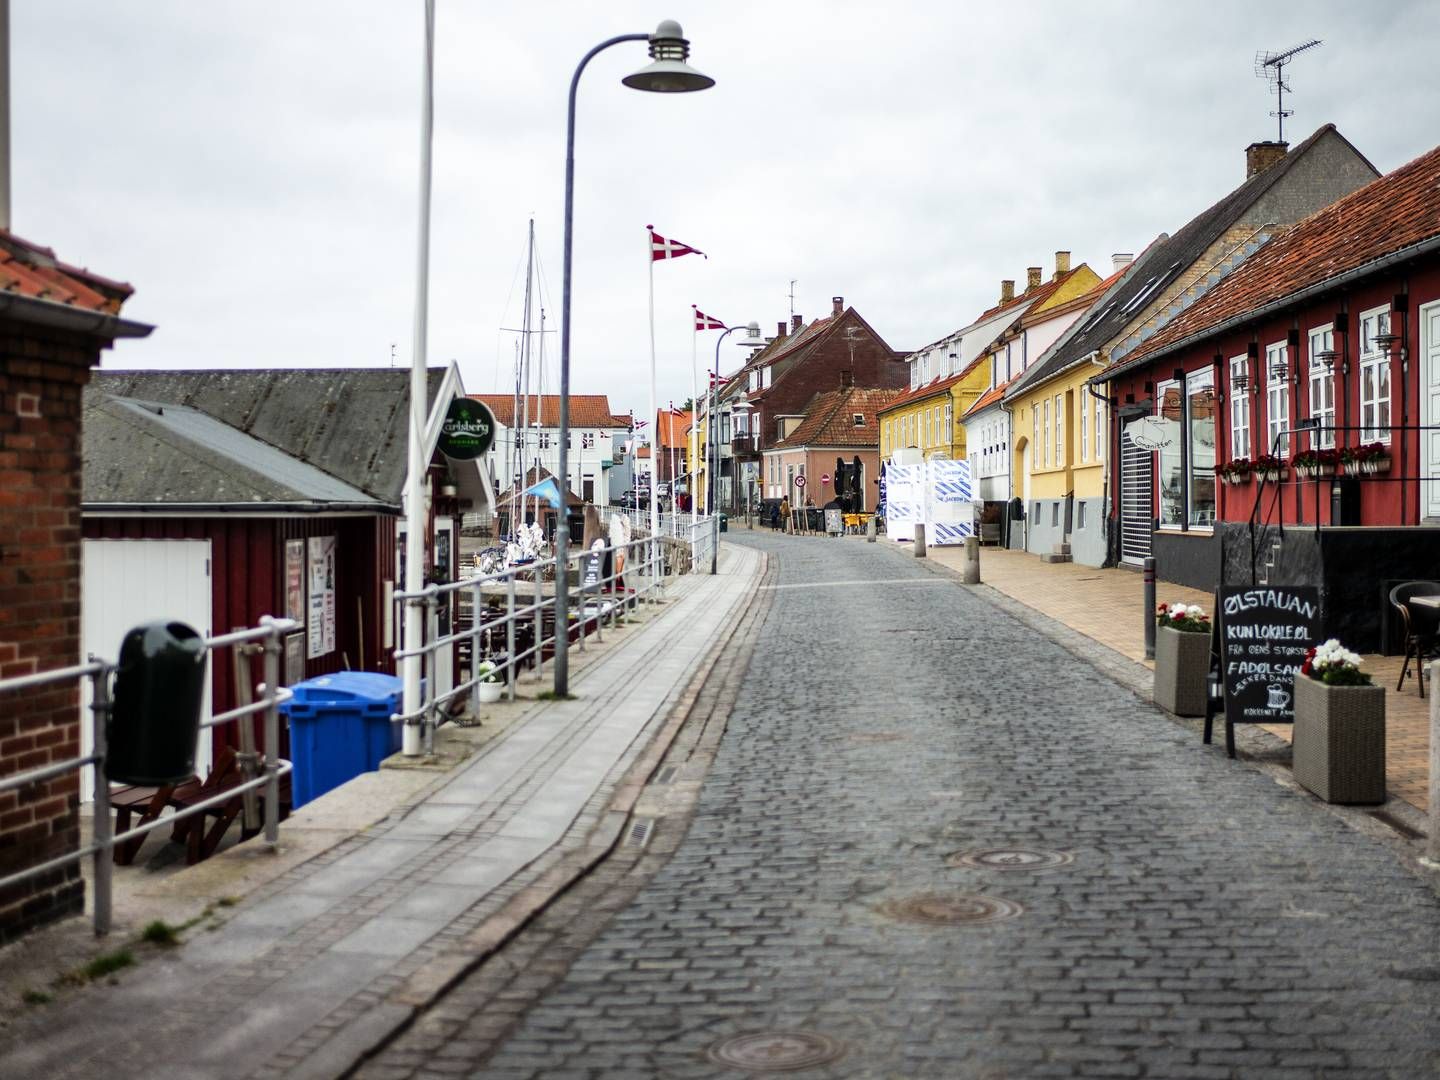 Grønbechs Hotel ligger i Allinge på det nordlige Bornholm. | Foto: Rasmus Flindt Pedersen / Ritzau Scanpix